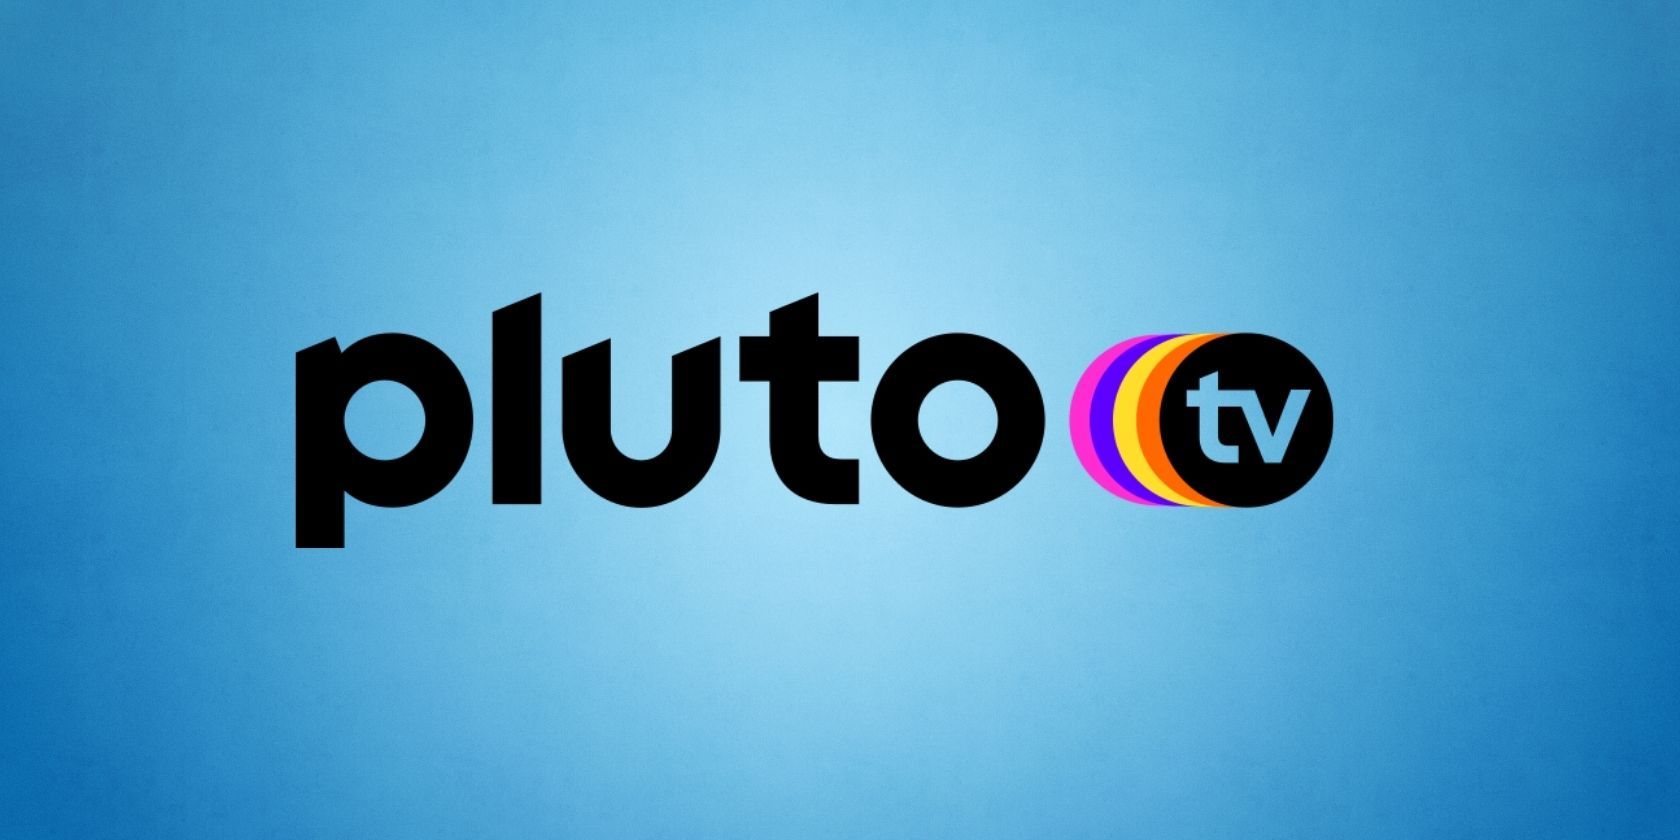 Pluto TV logo on blue background